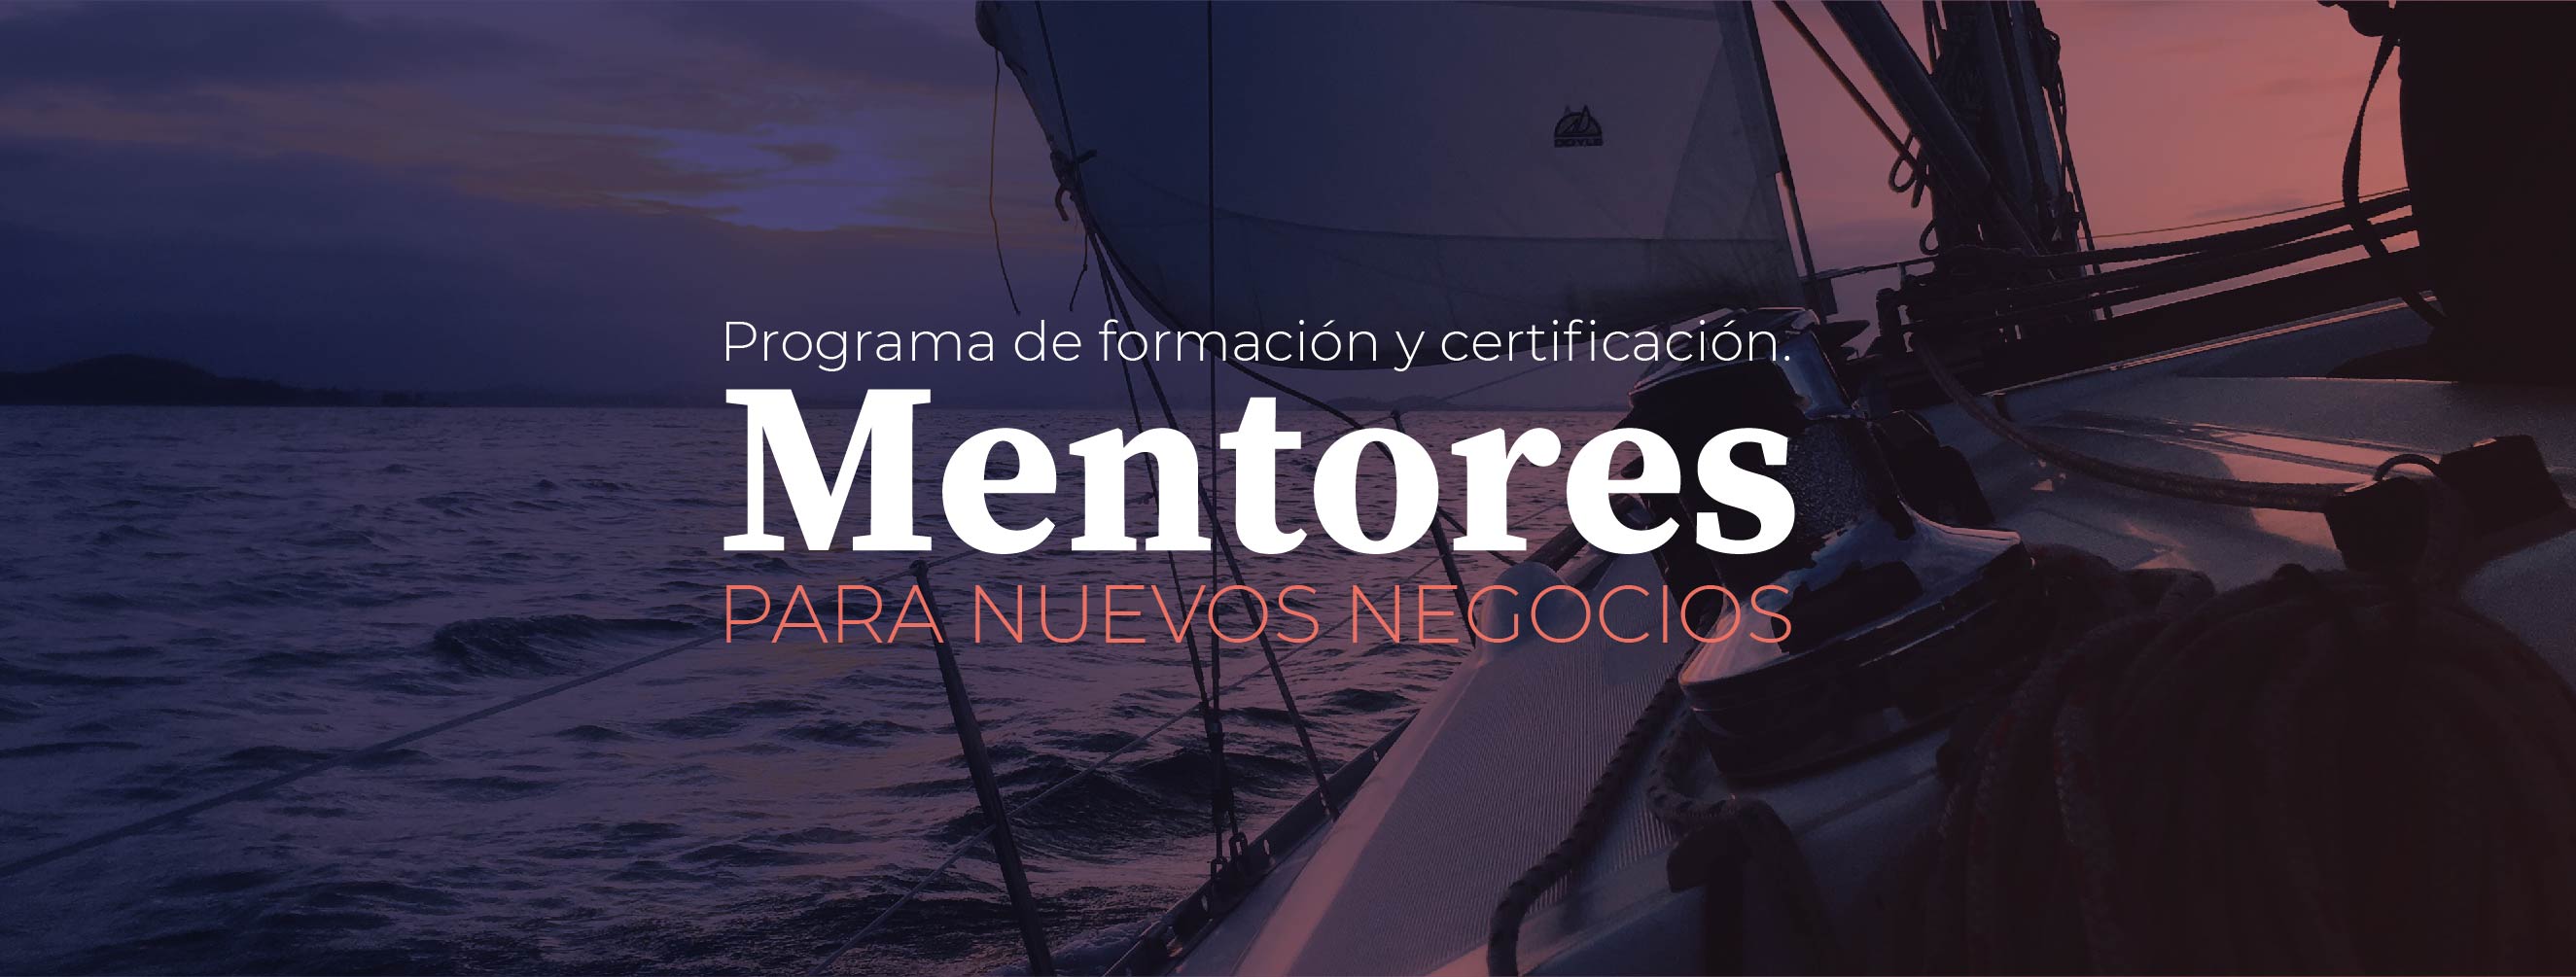 header programa mentores-13